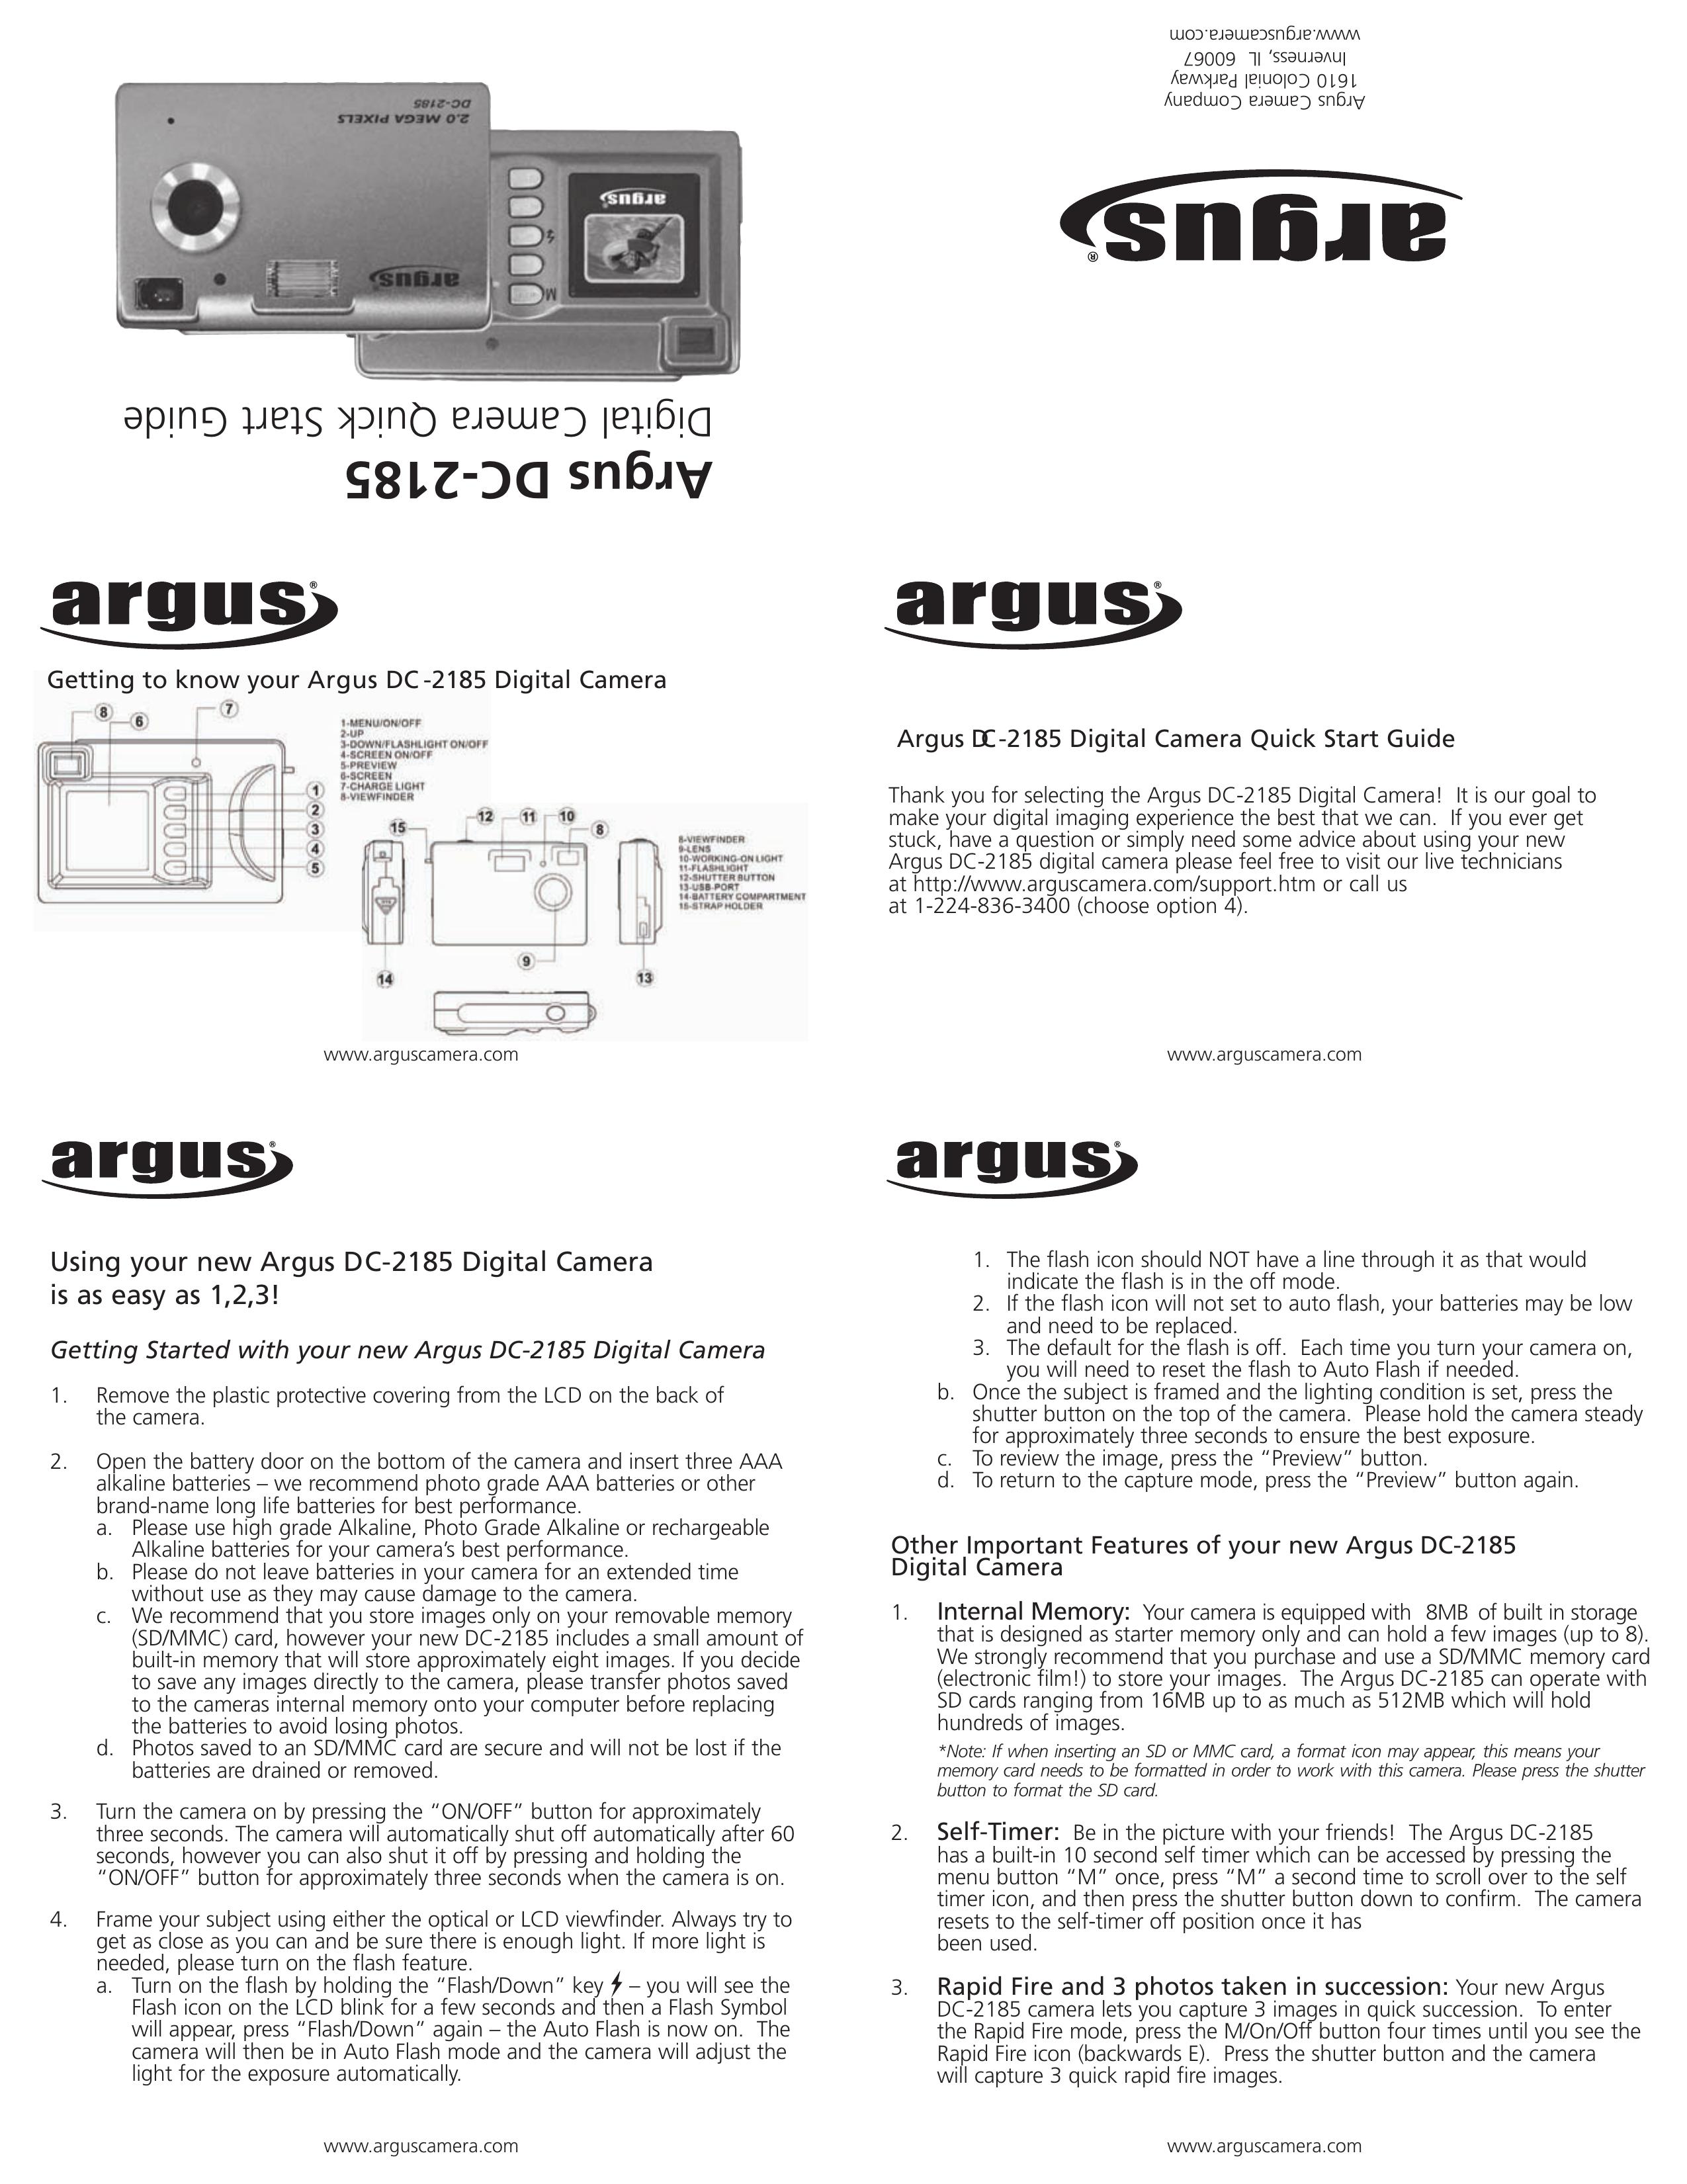 Argus Camera DC-2185 Digital Camera User Manual